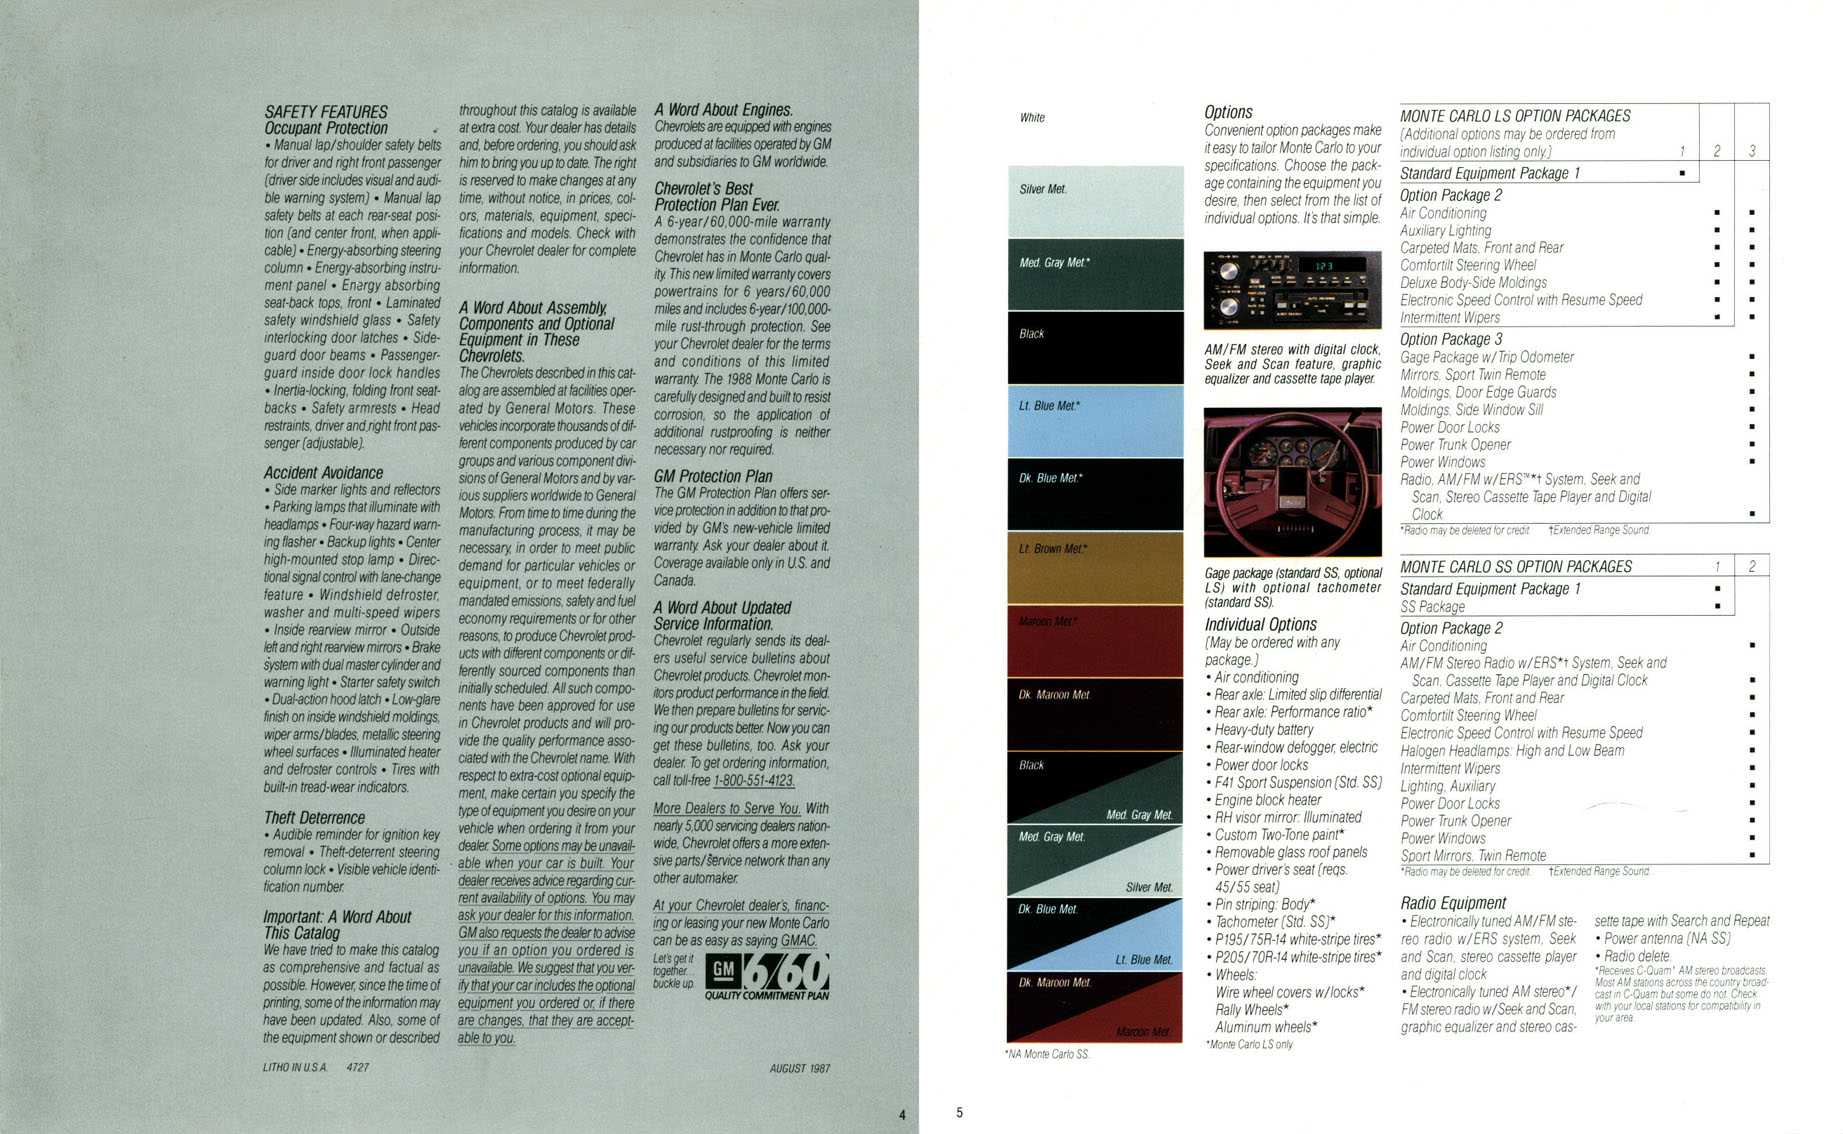 1988 Monte Carlo OEM Brochure (4)